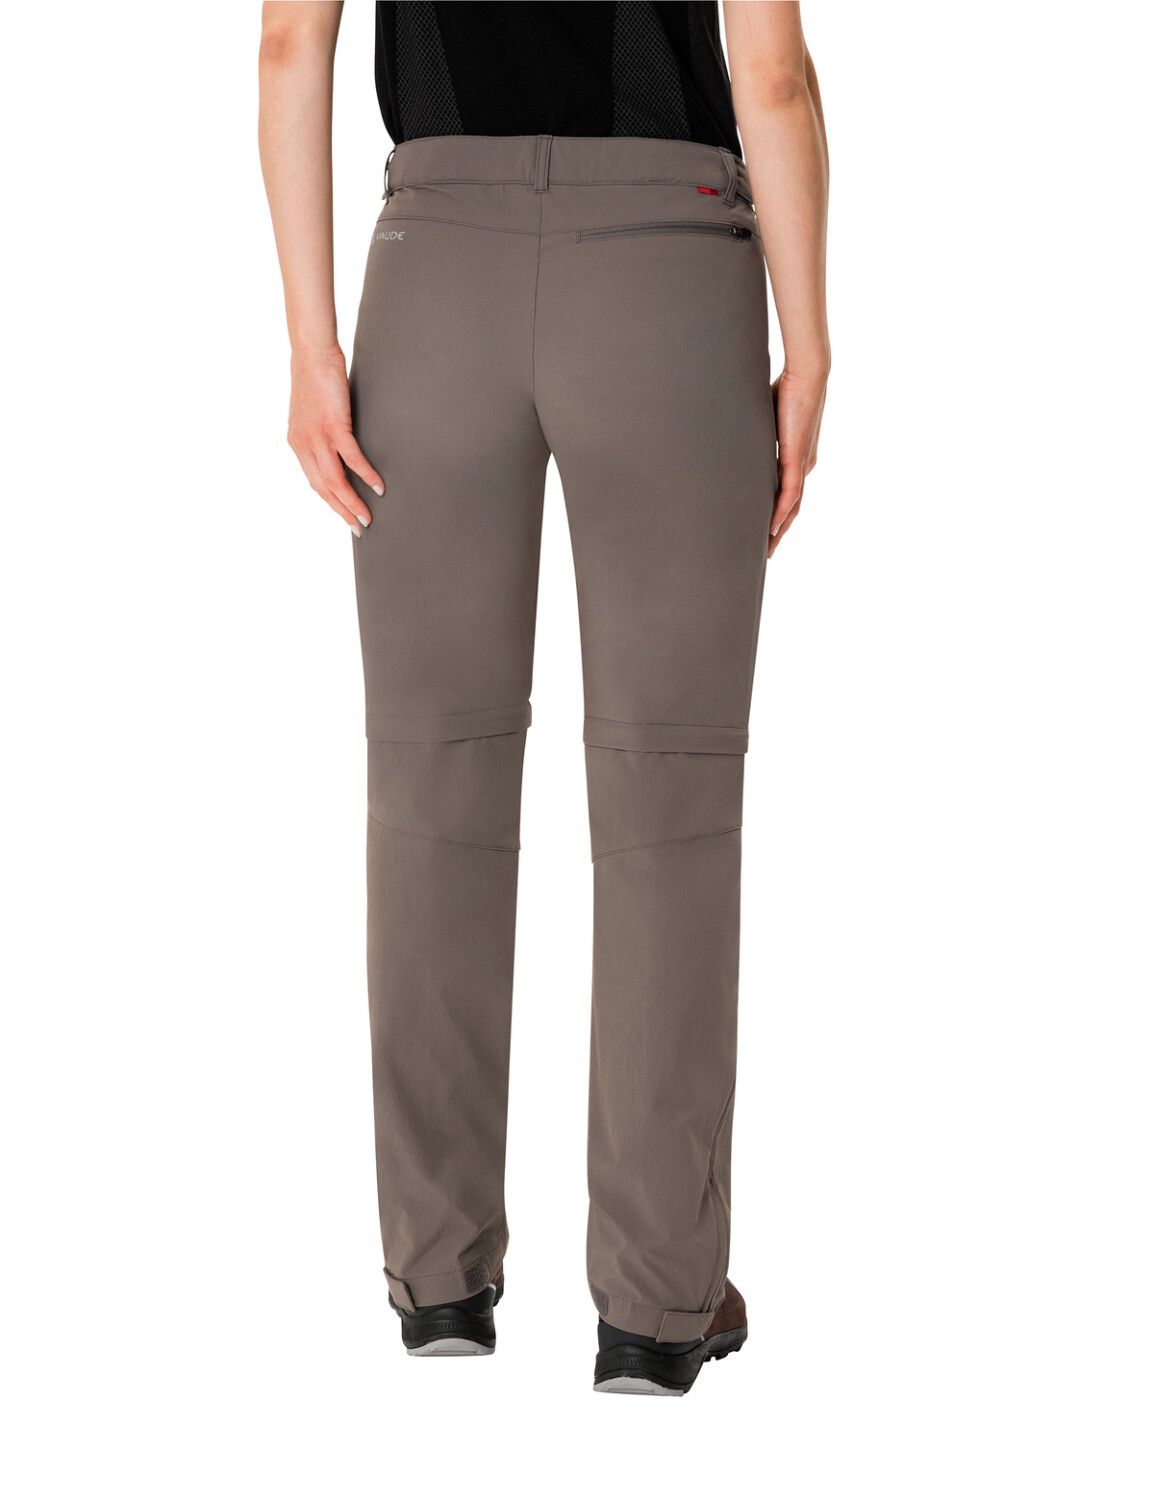 VAUDE Women's Farley Stretch ZO T-Zip Pants (Bild 37)